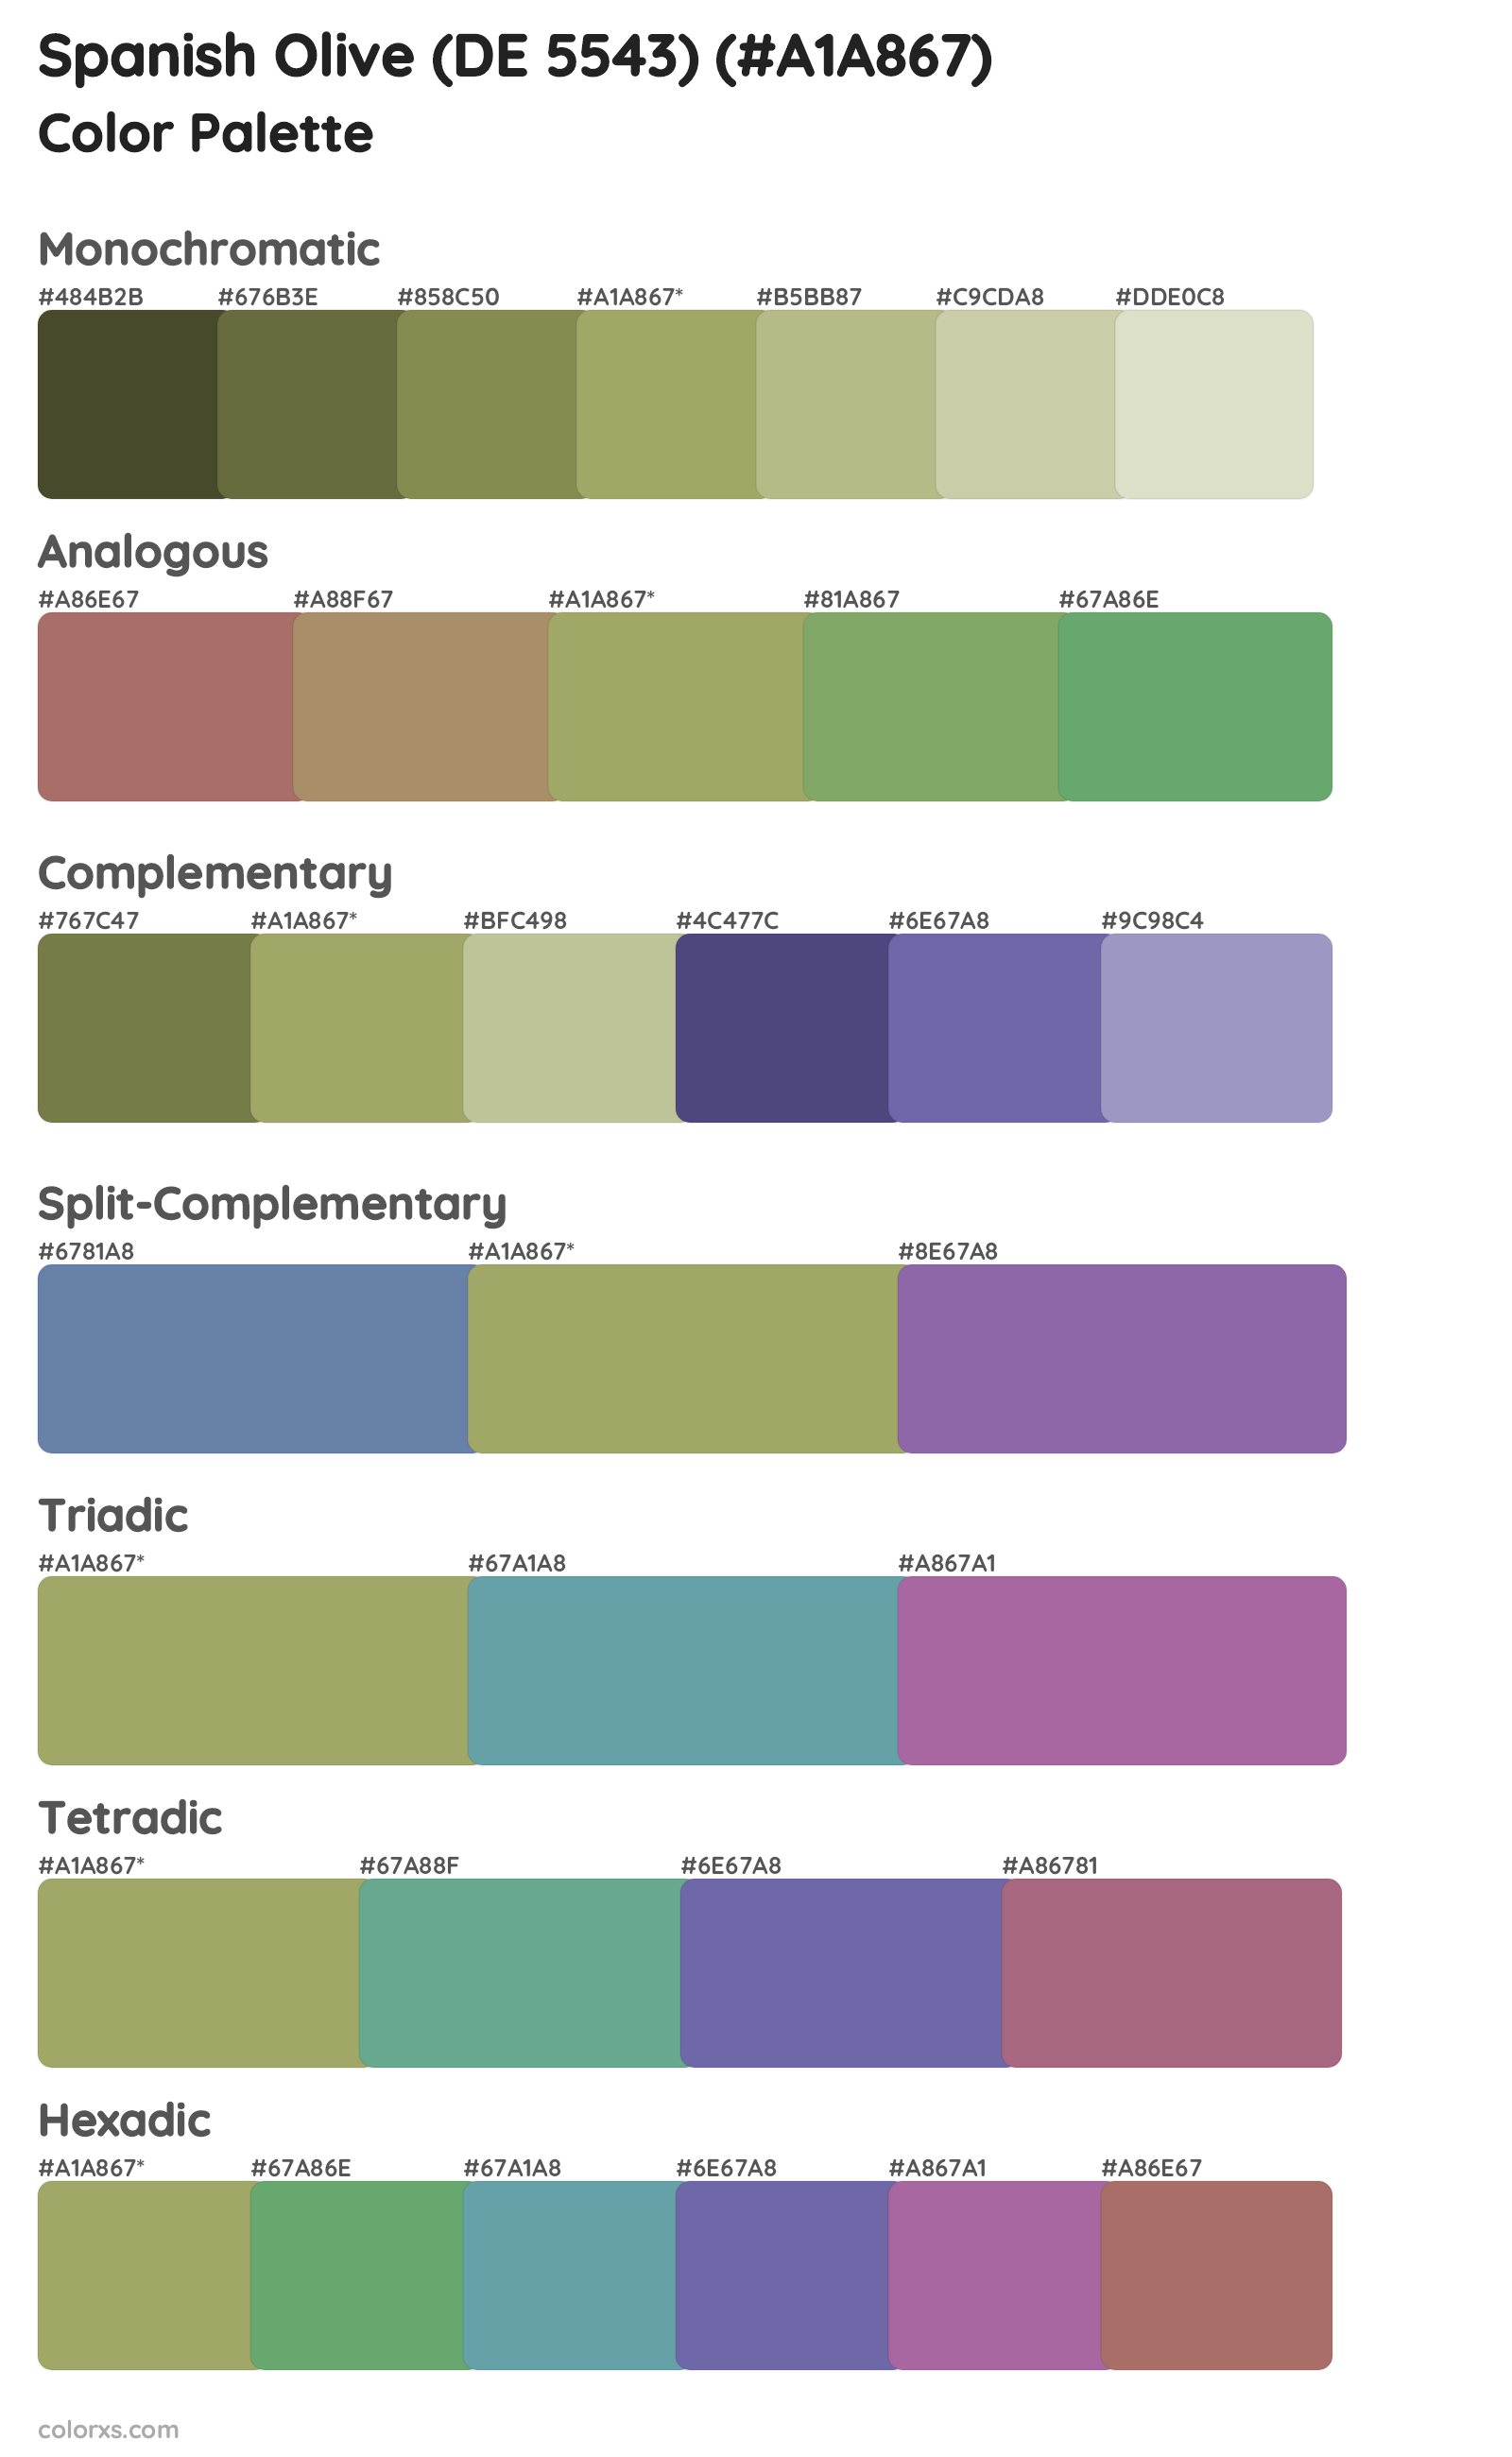 Spanish Olive (DE 5543) Color Scheme Palettes